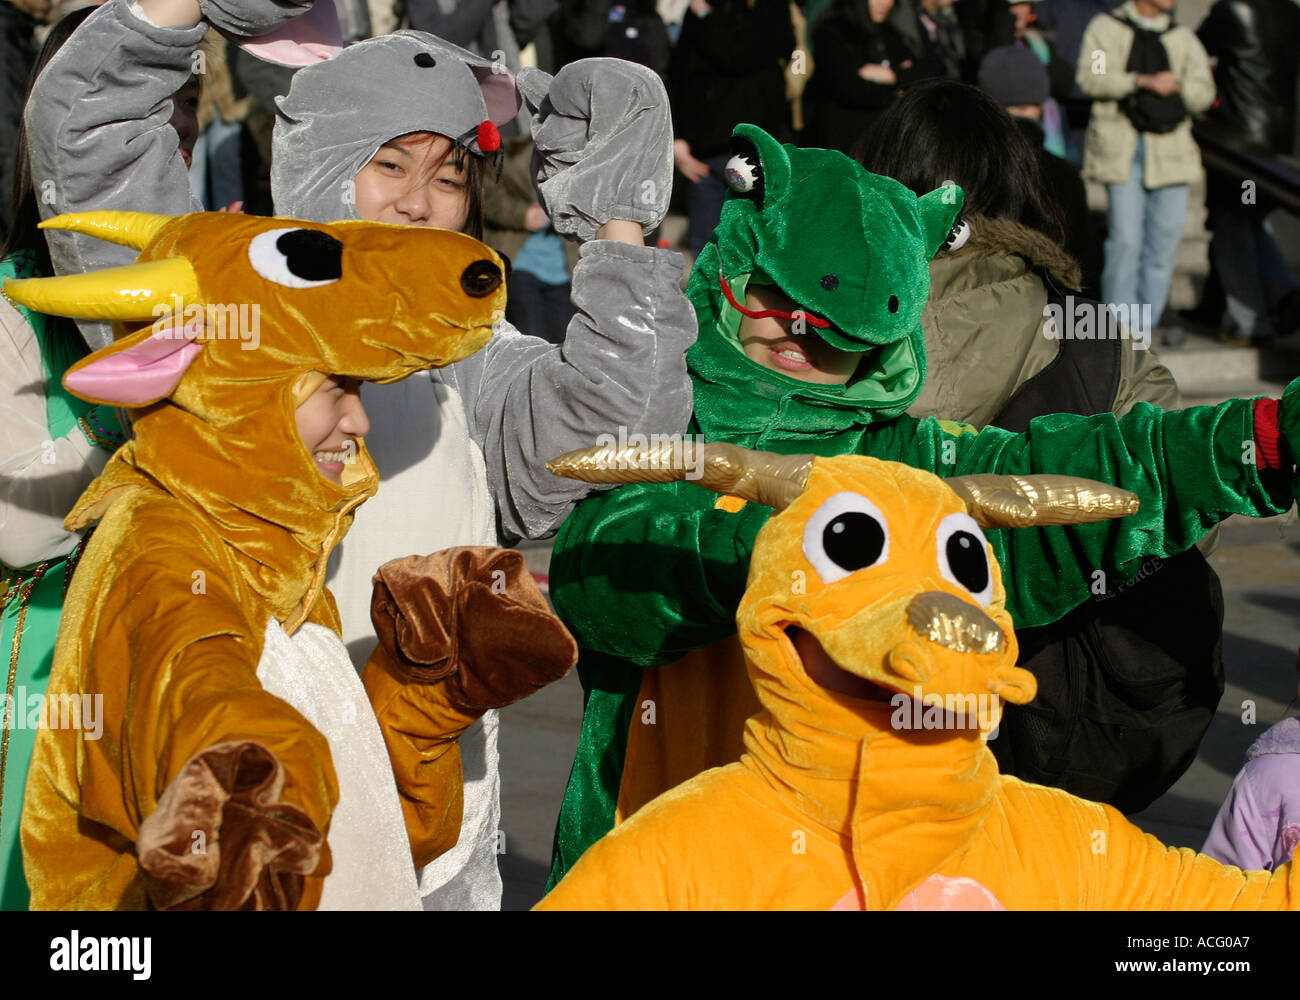 Les jeunes habillés en costumes d'animaux du Nouvel An chinois. Trafalgar Square, Londres, Angleterre Banque D'Images